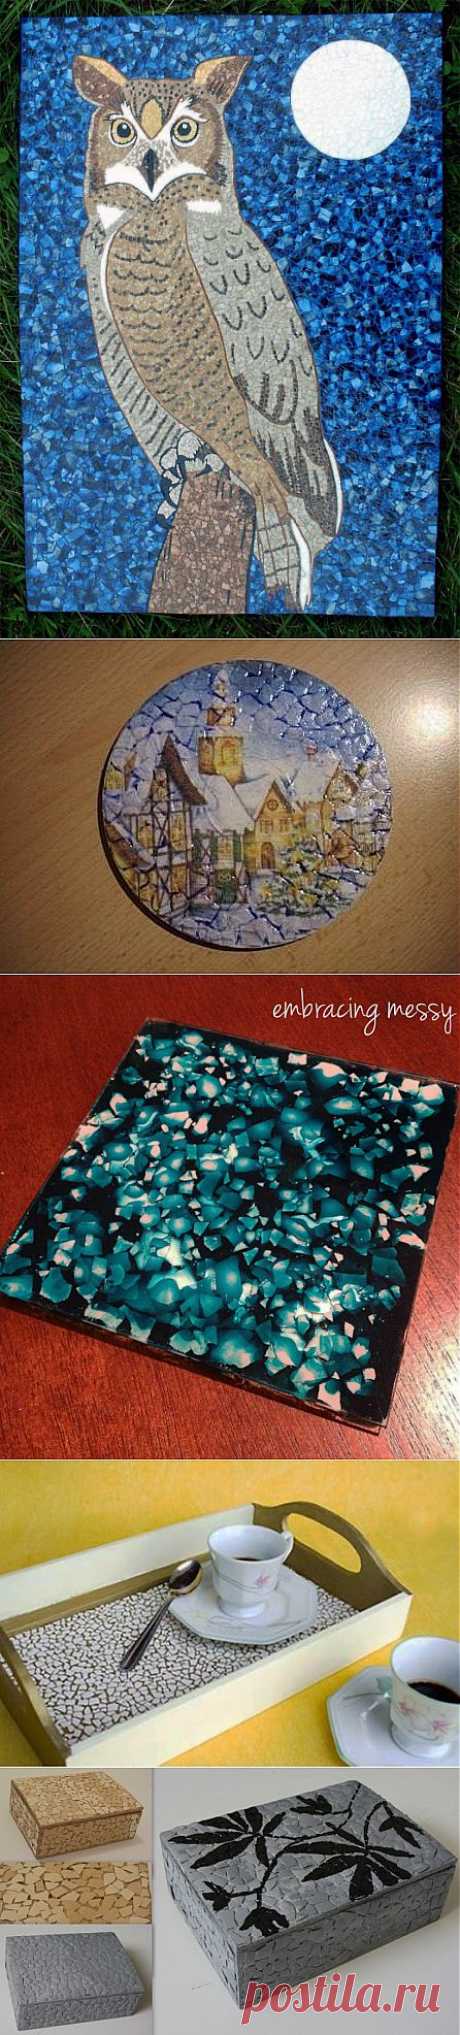 (+1) тема - Мозаика из яичной скорлупы: удивительная красота из самого дешёвого материала | Полезные советы